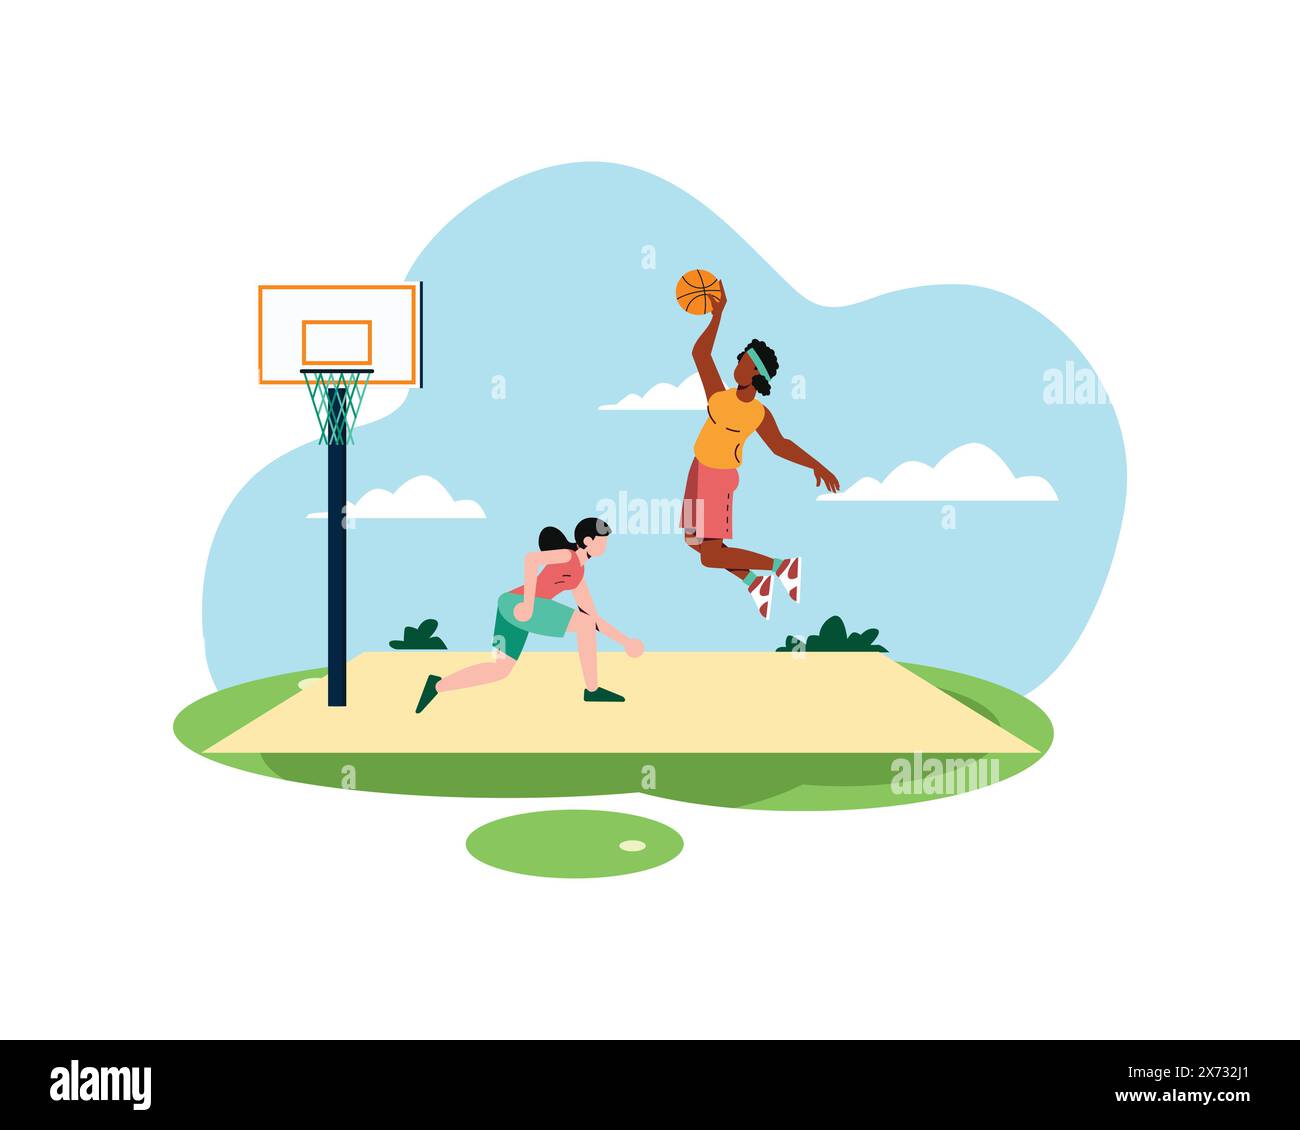 Due donne che giocano a basket si stanno esercitando e una sta per fare uno slam Dunk. concetto di sport e ricreazione. Illustrazione di uno stile di vita sano in appartamento Illustrazione Vettoriale